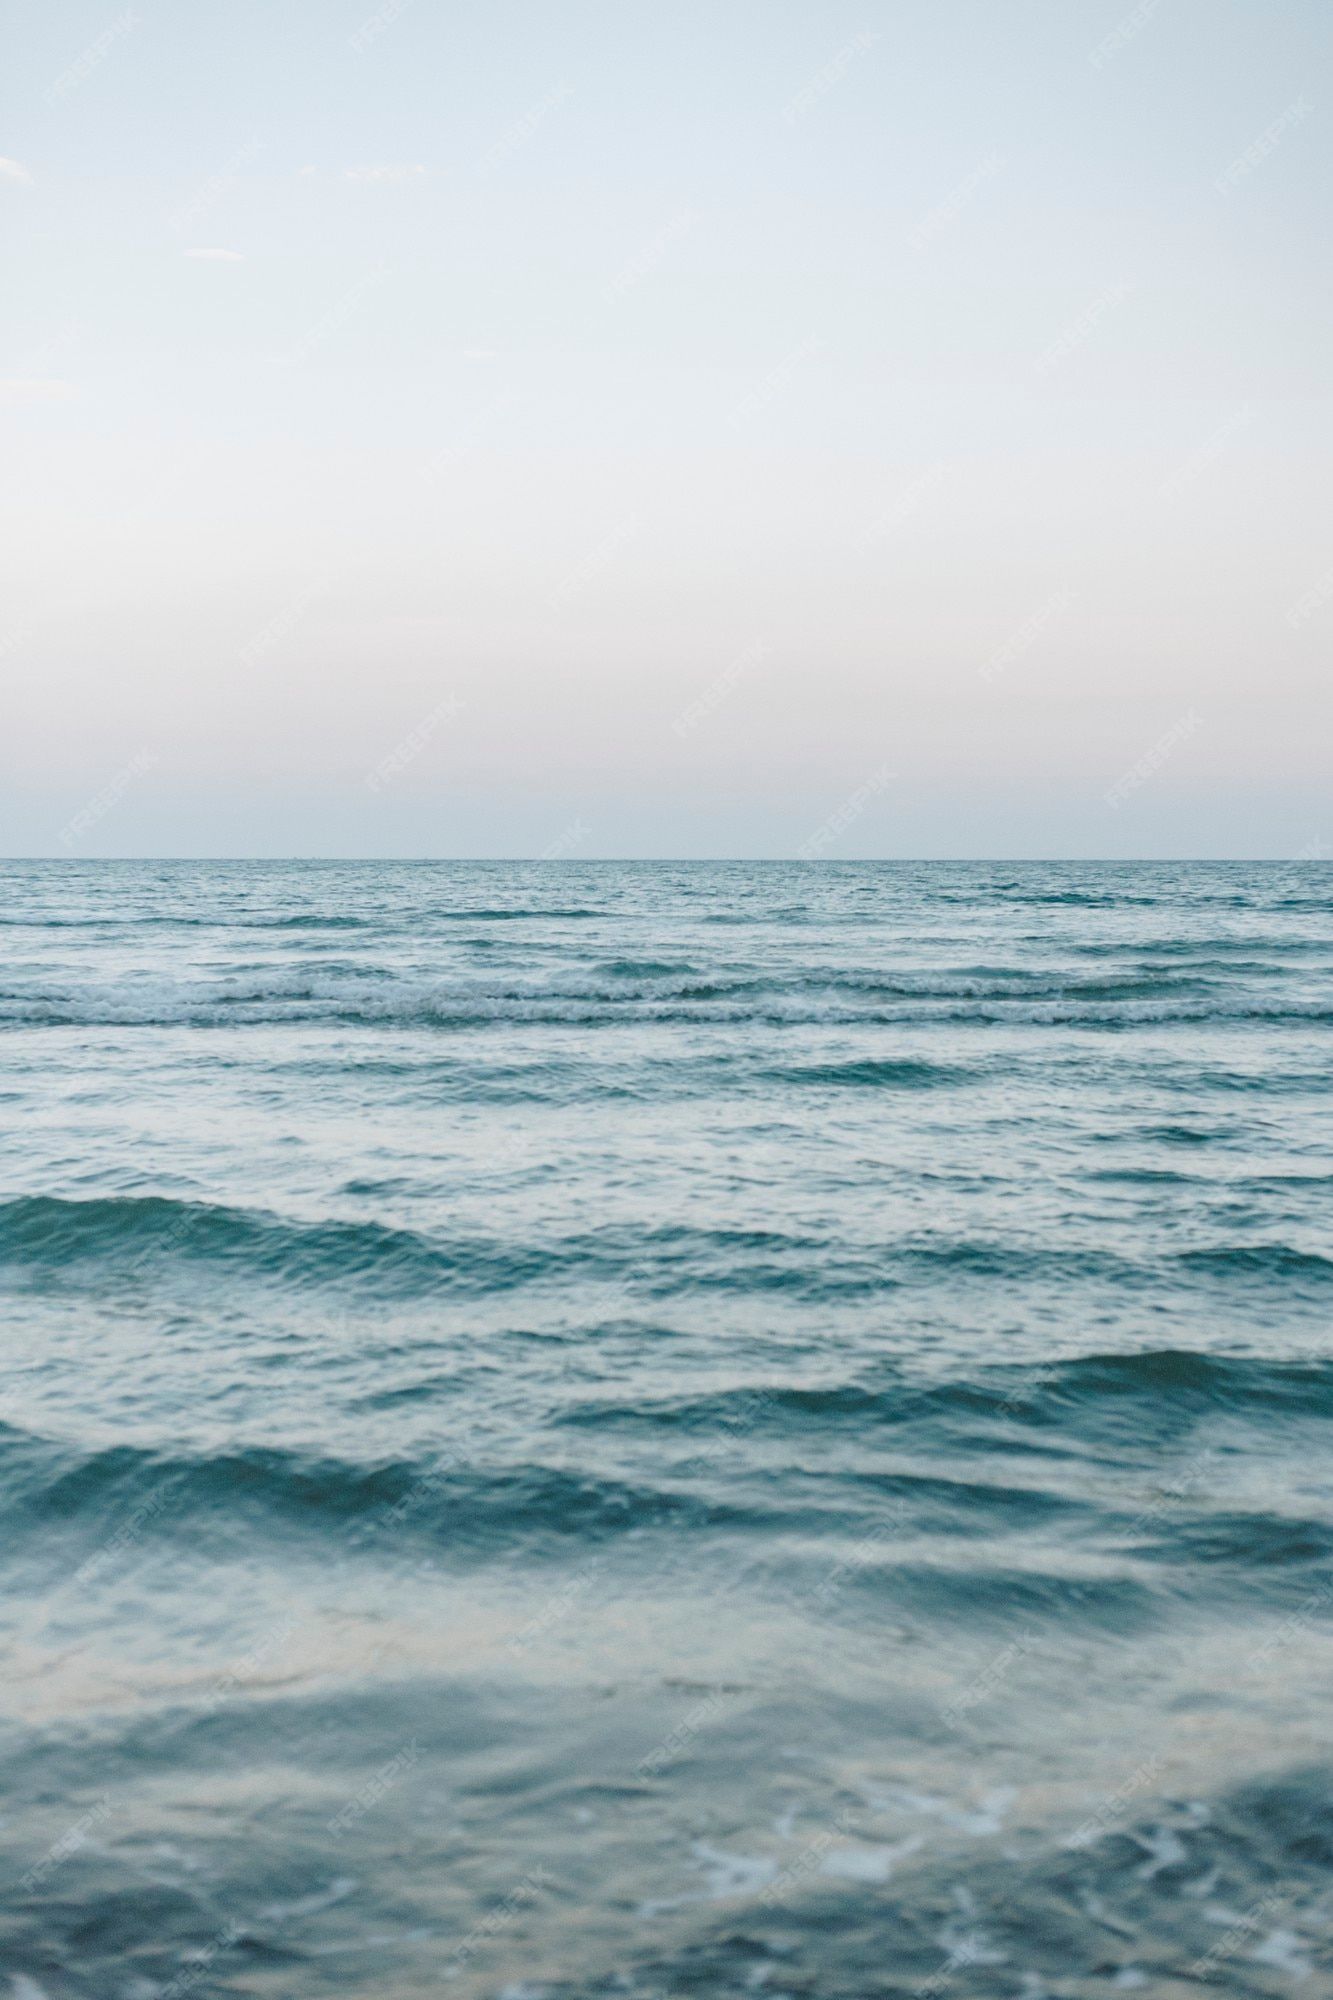  Wellen Hintergrundbild 1333x2000. Wellen auf einem weiten blauen meer